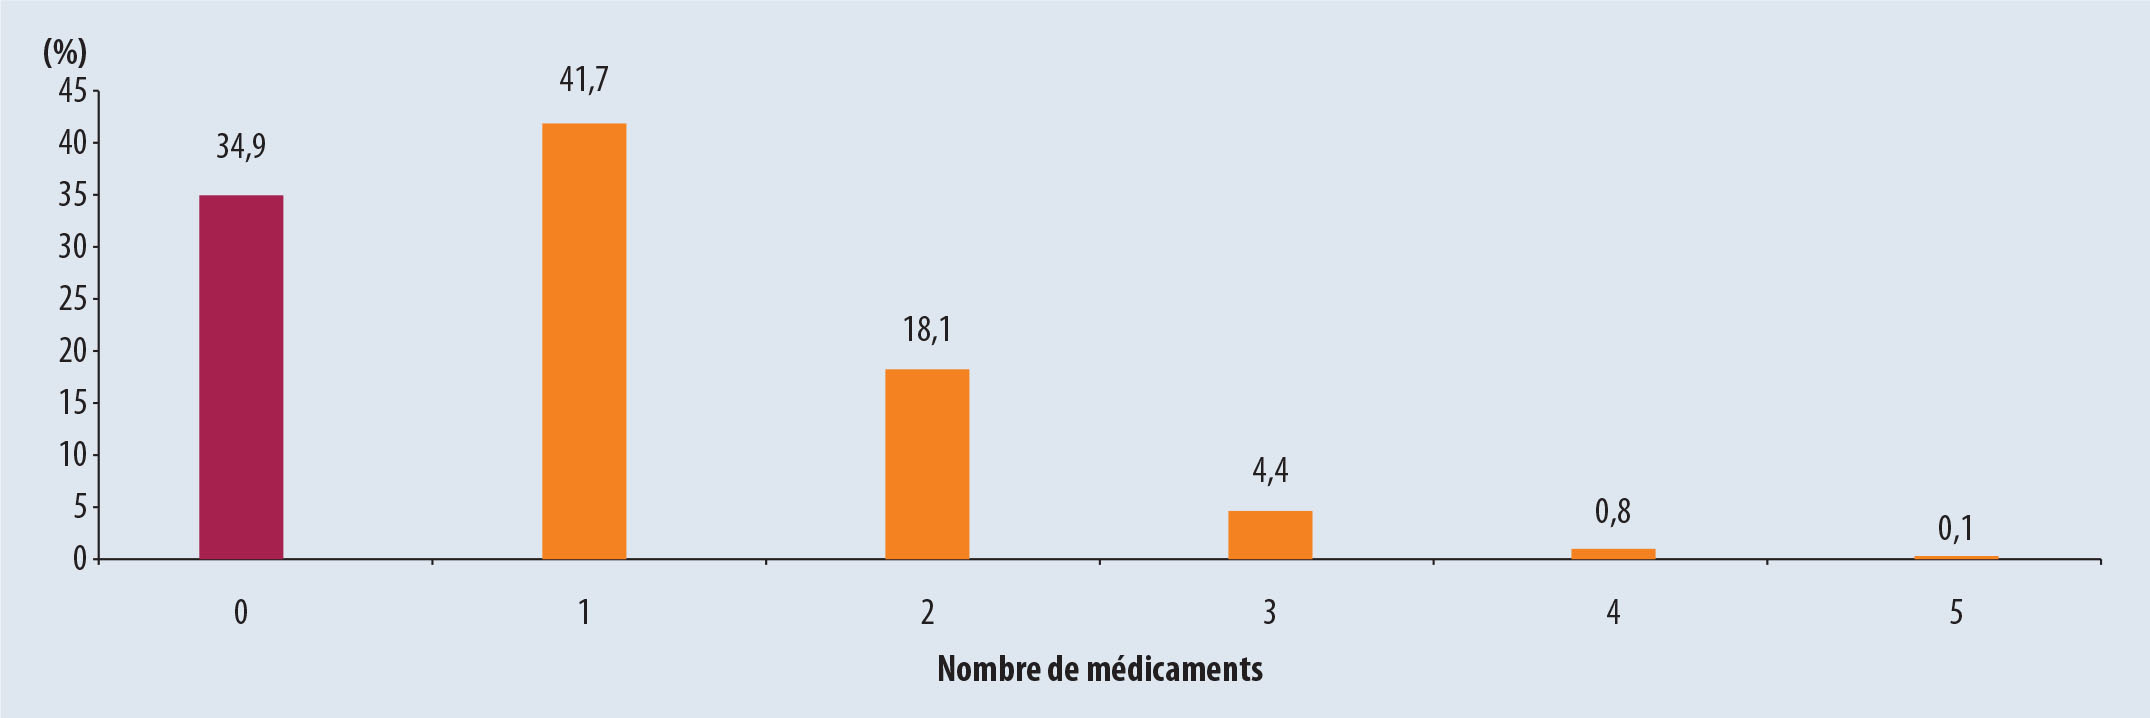 Étude IPOP : analyse qualitative et quantitative sur le risque iatrogénique chez les sujets âgés en France ... - Figure 5